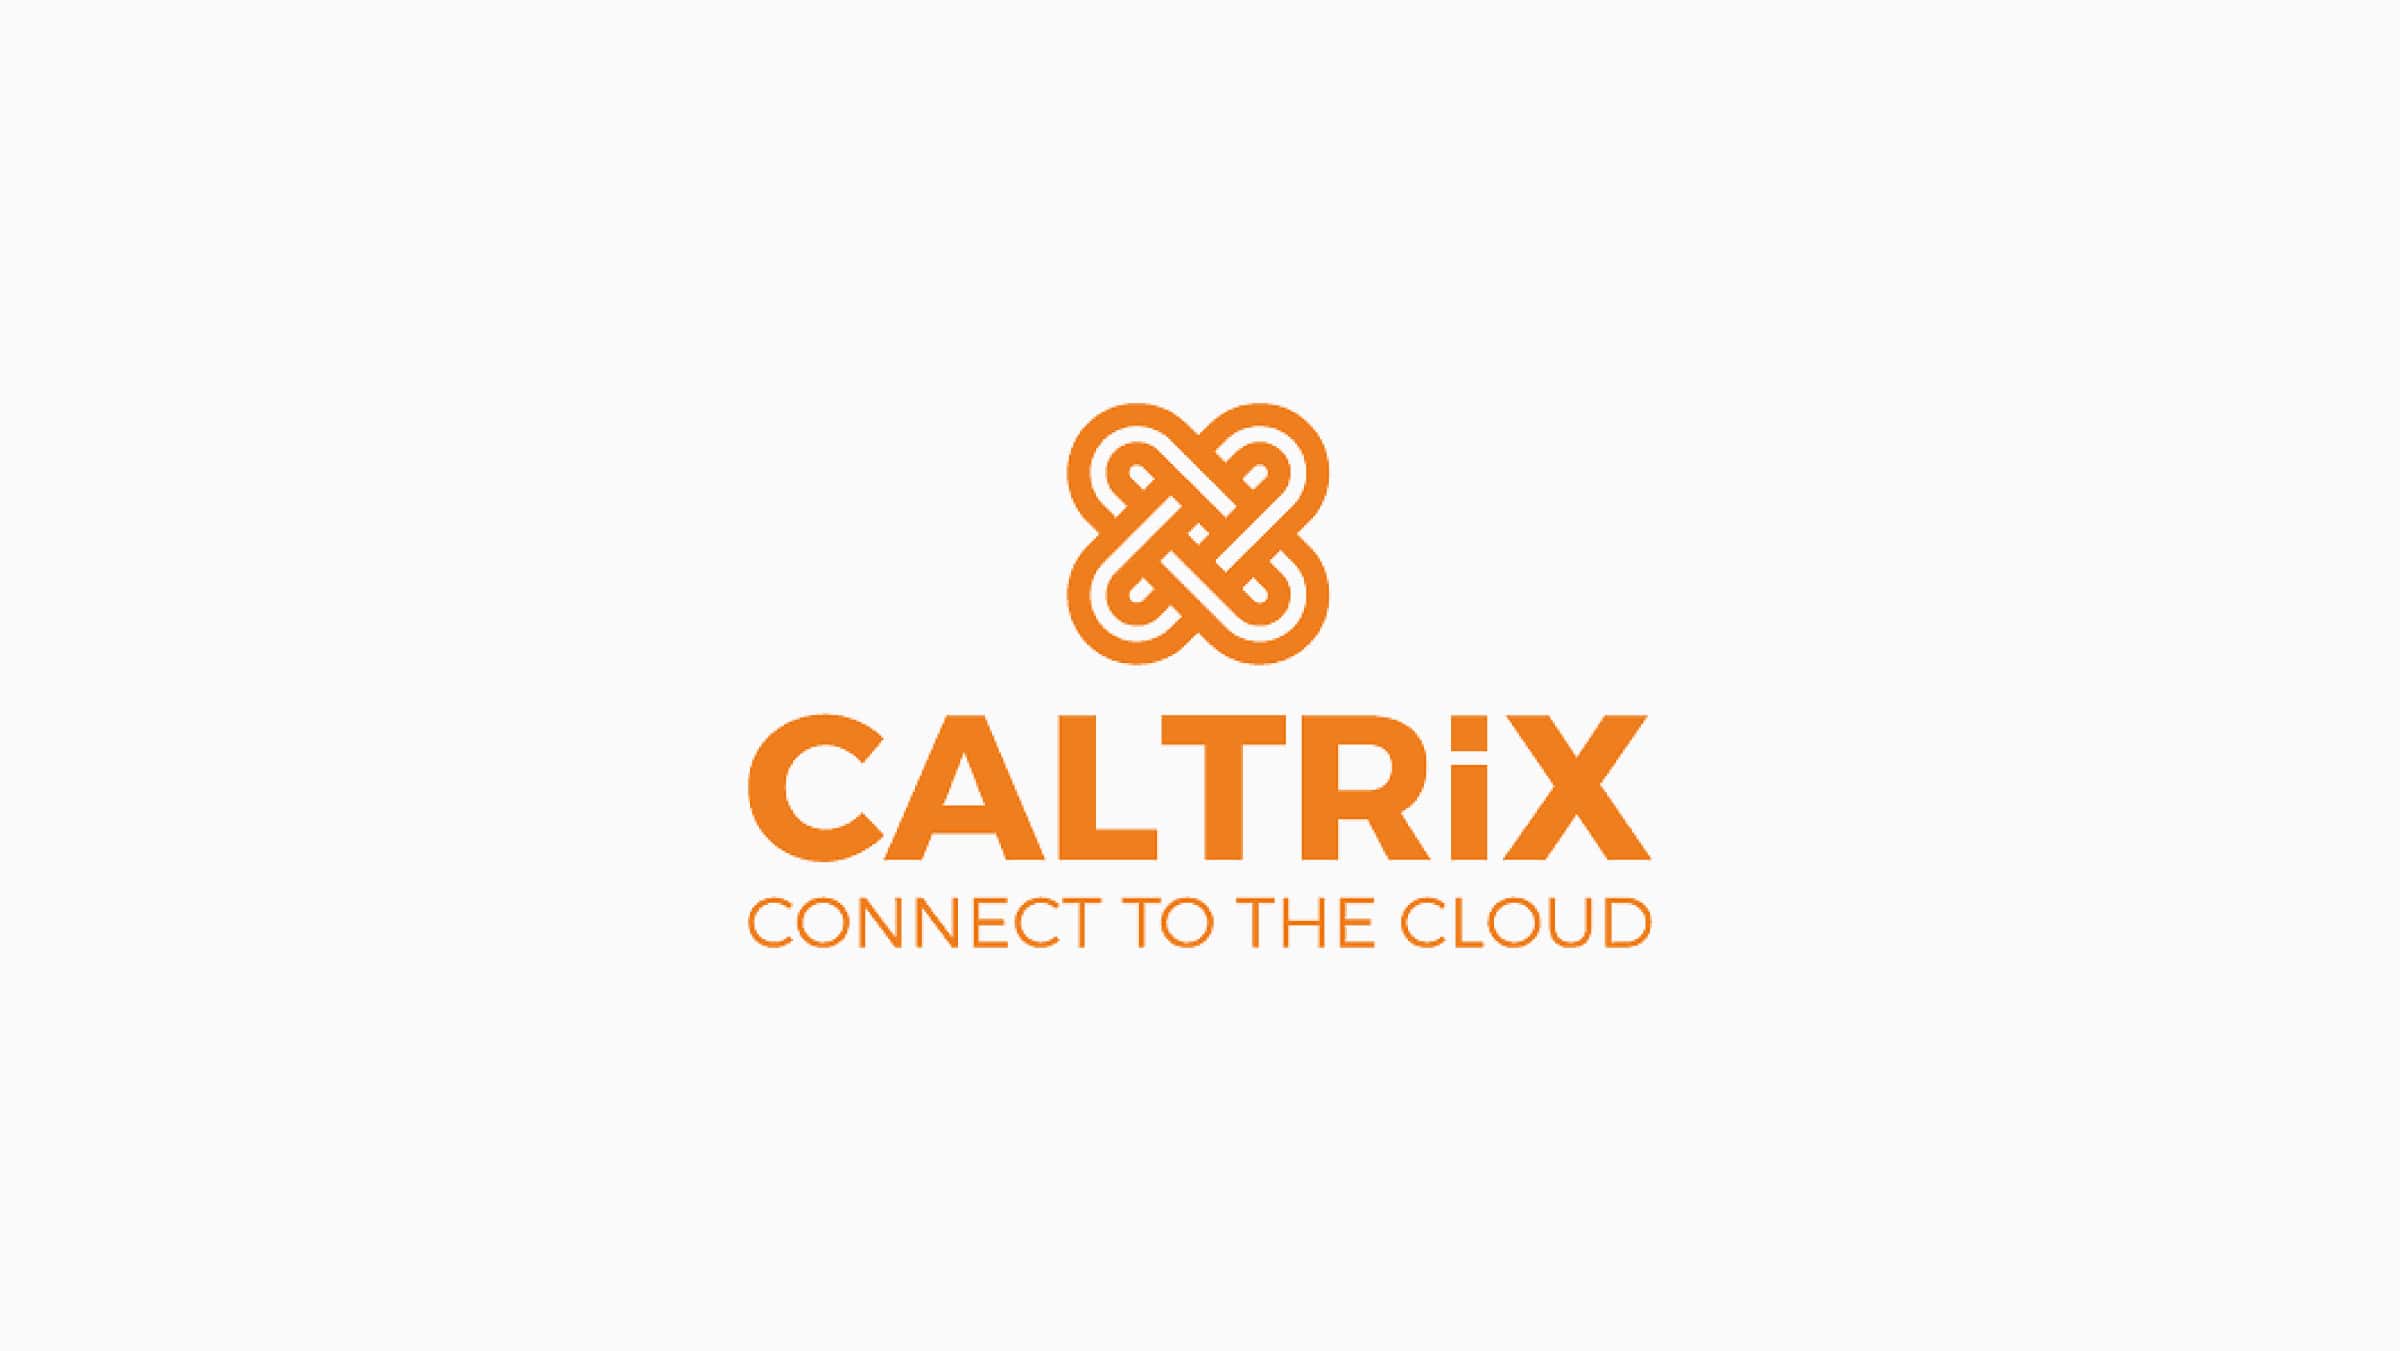 The Caltrix logo